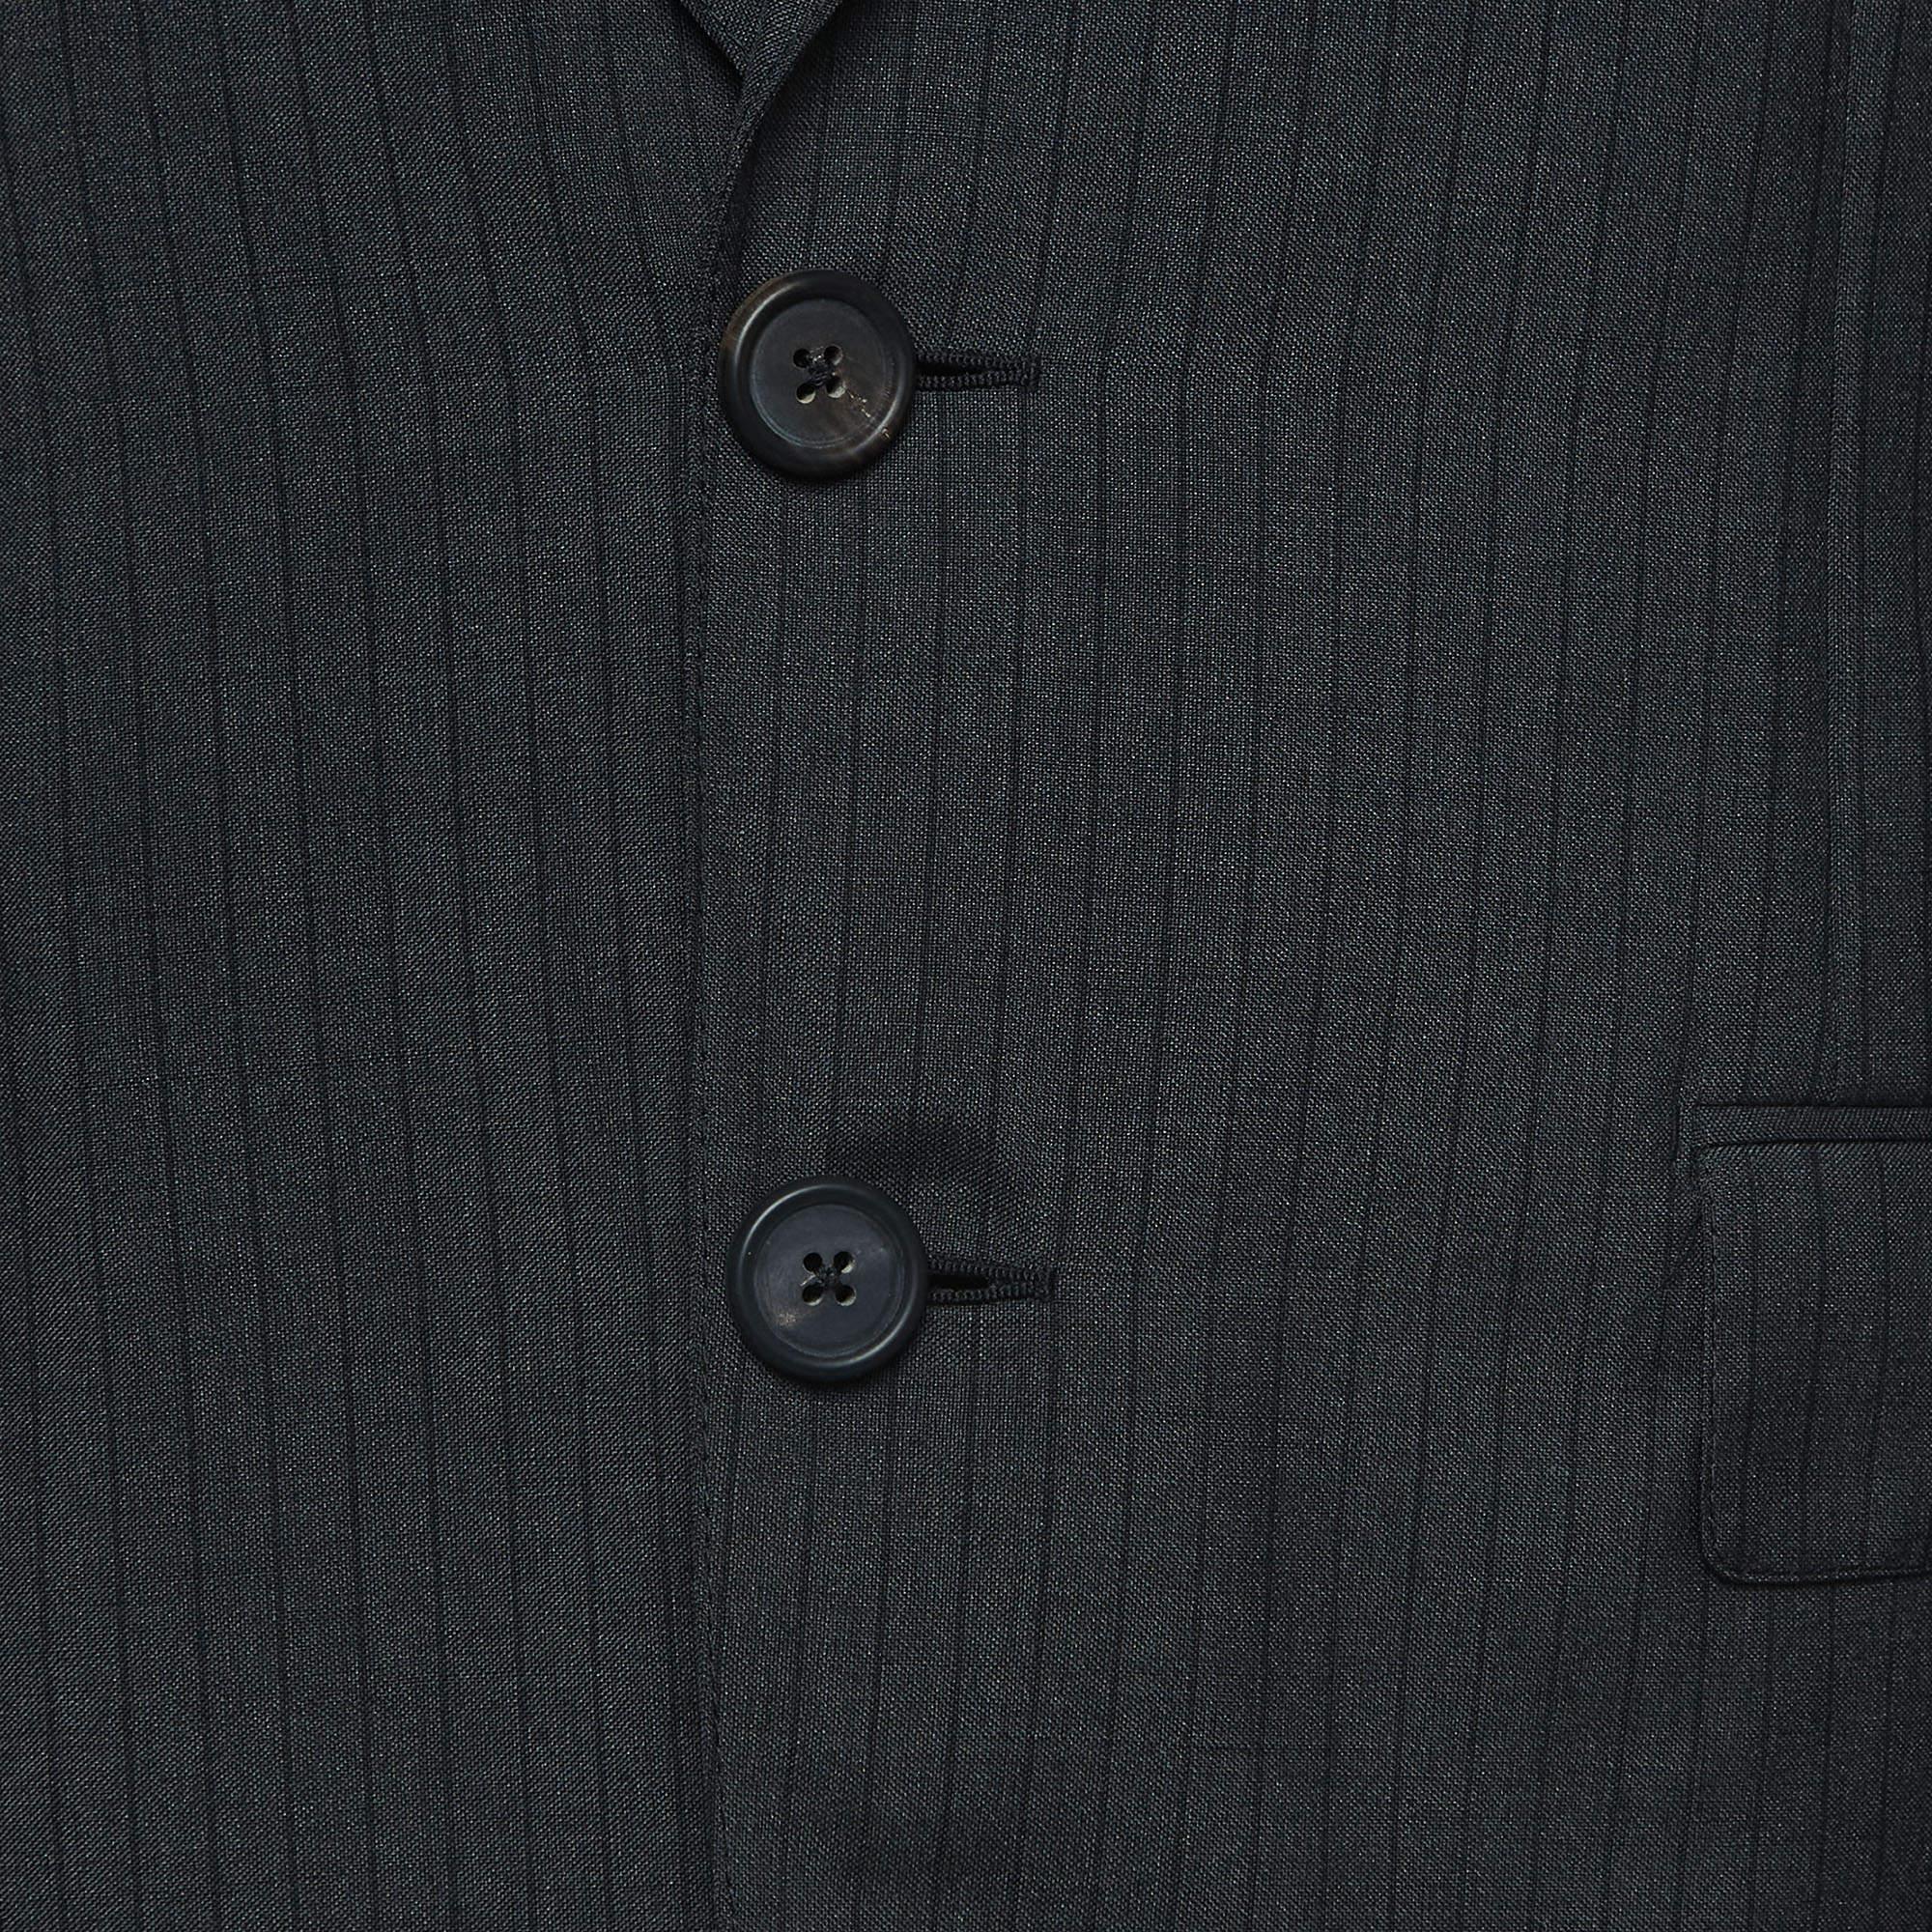 Ce blazer Prada vous apporte à la fois classe et luxe lorsque vous le portez. Il est souligné par des manches longues et des détails classiques, ce qui lui confère une finition polie et formelle.

